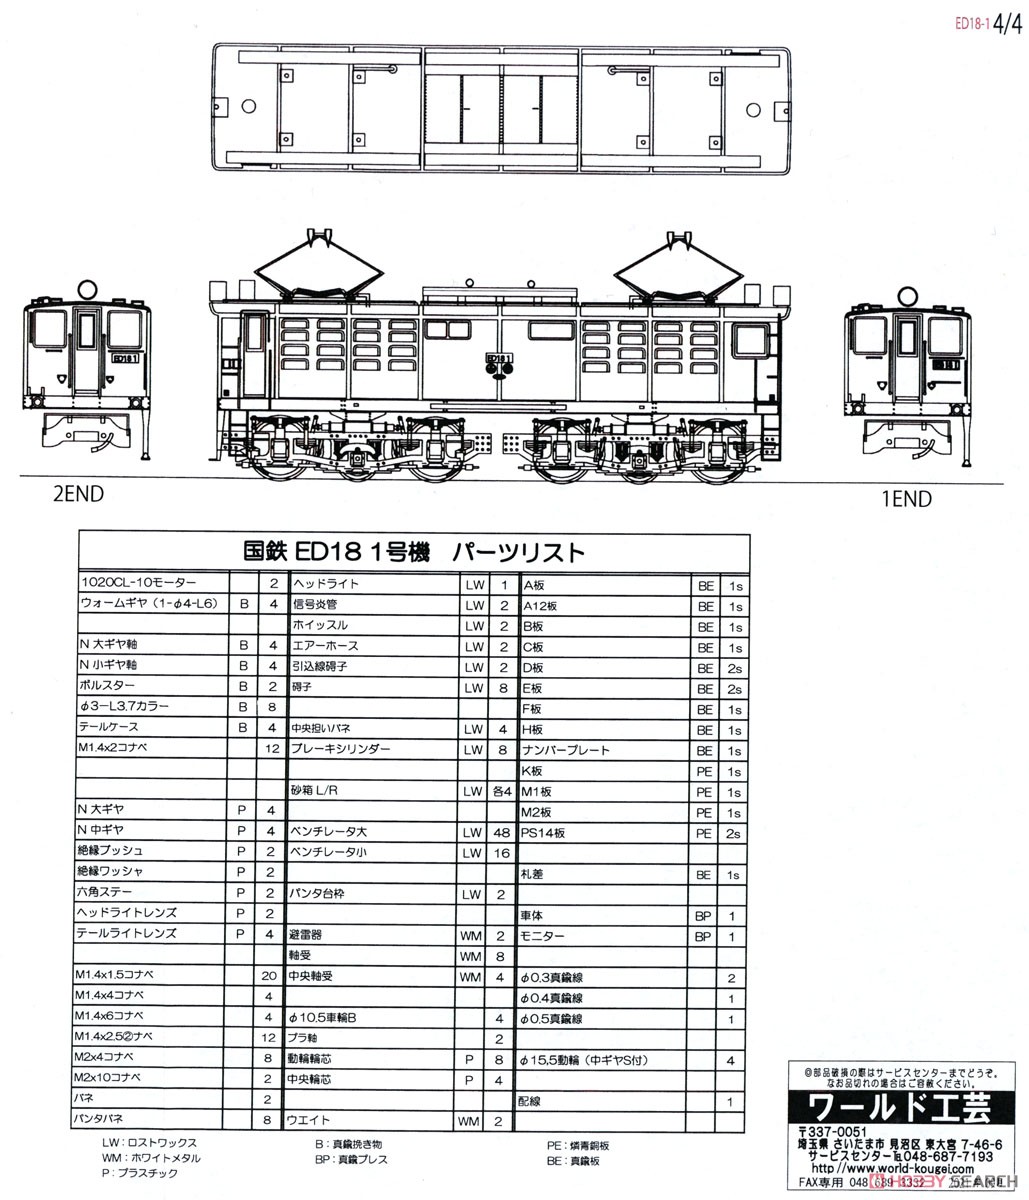 16番(HO) 国鉄 ED18 1号機 II (リニューアル品) 組立キット [コアレスモーター採用] (組み立てキット) (鉄道模型) 設計図5